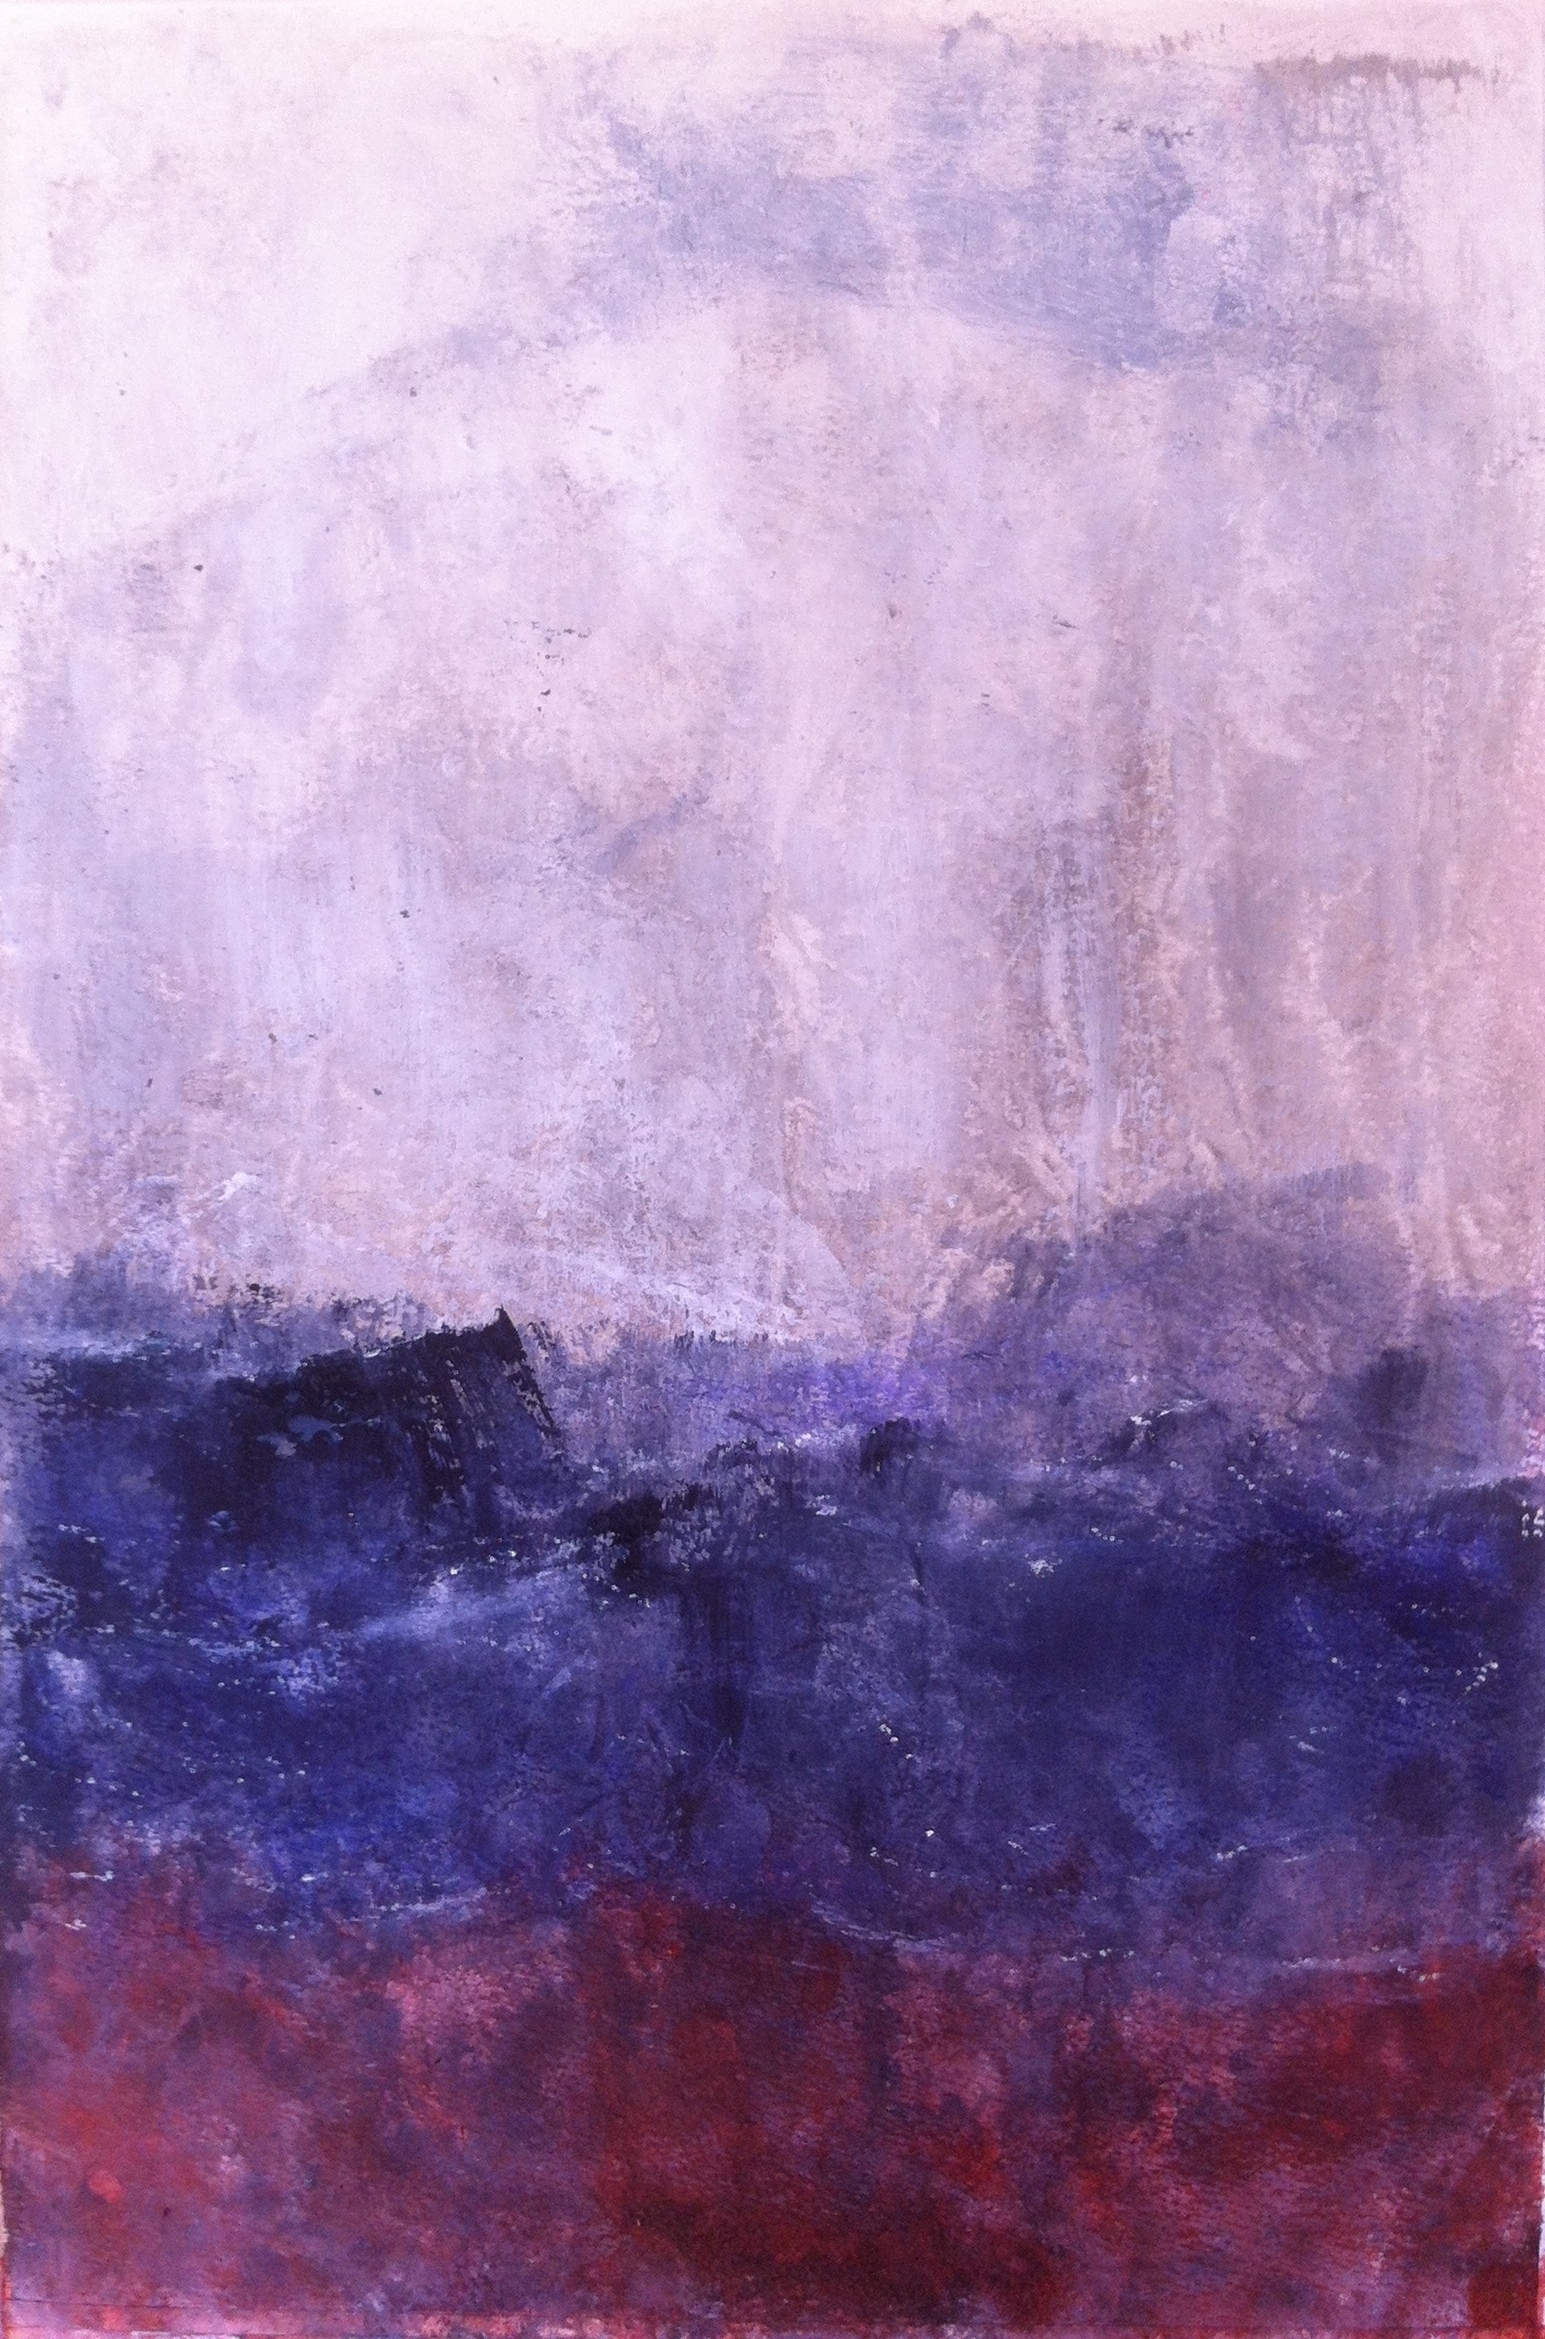 N° 1357 - Avis de tempête - Acrylique sur papier - 56 x 37 cm - 17 avril 2014